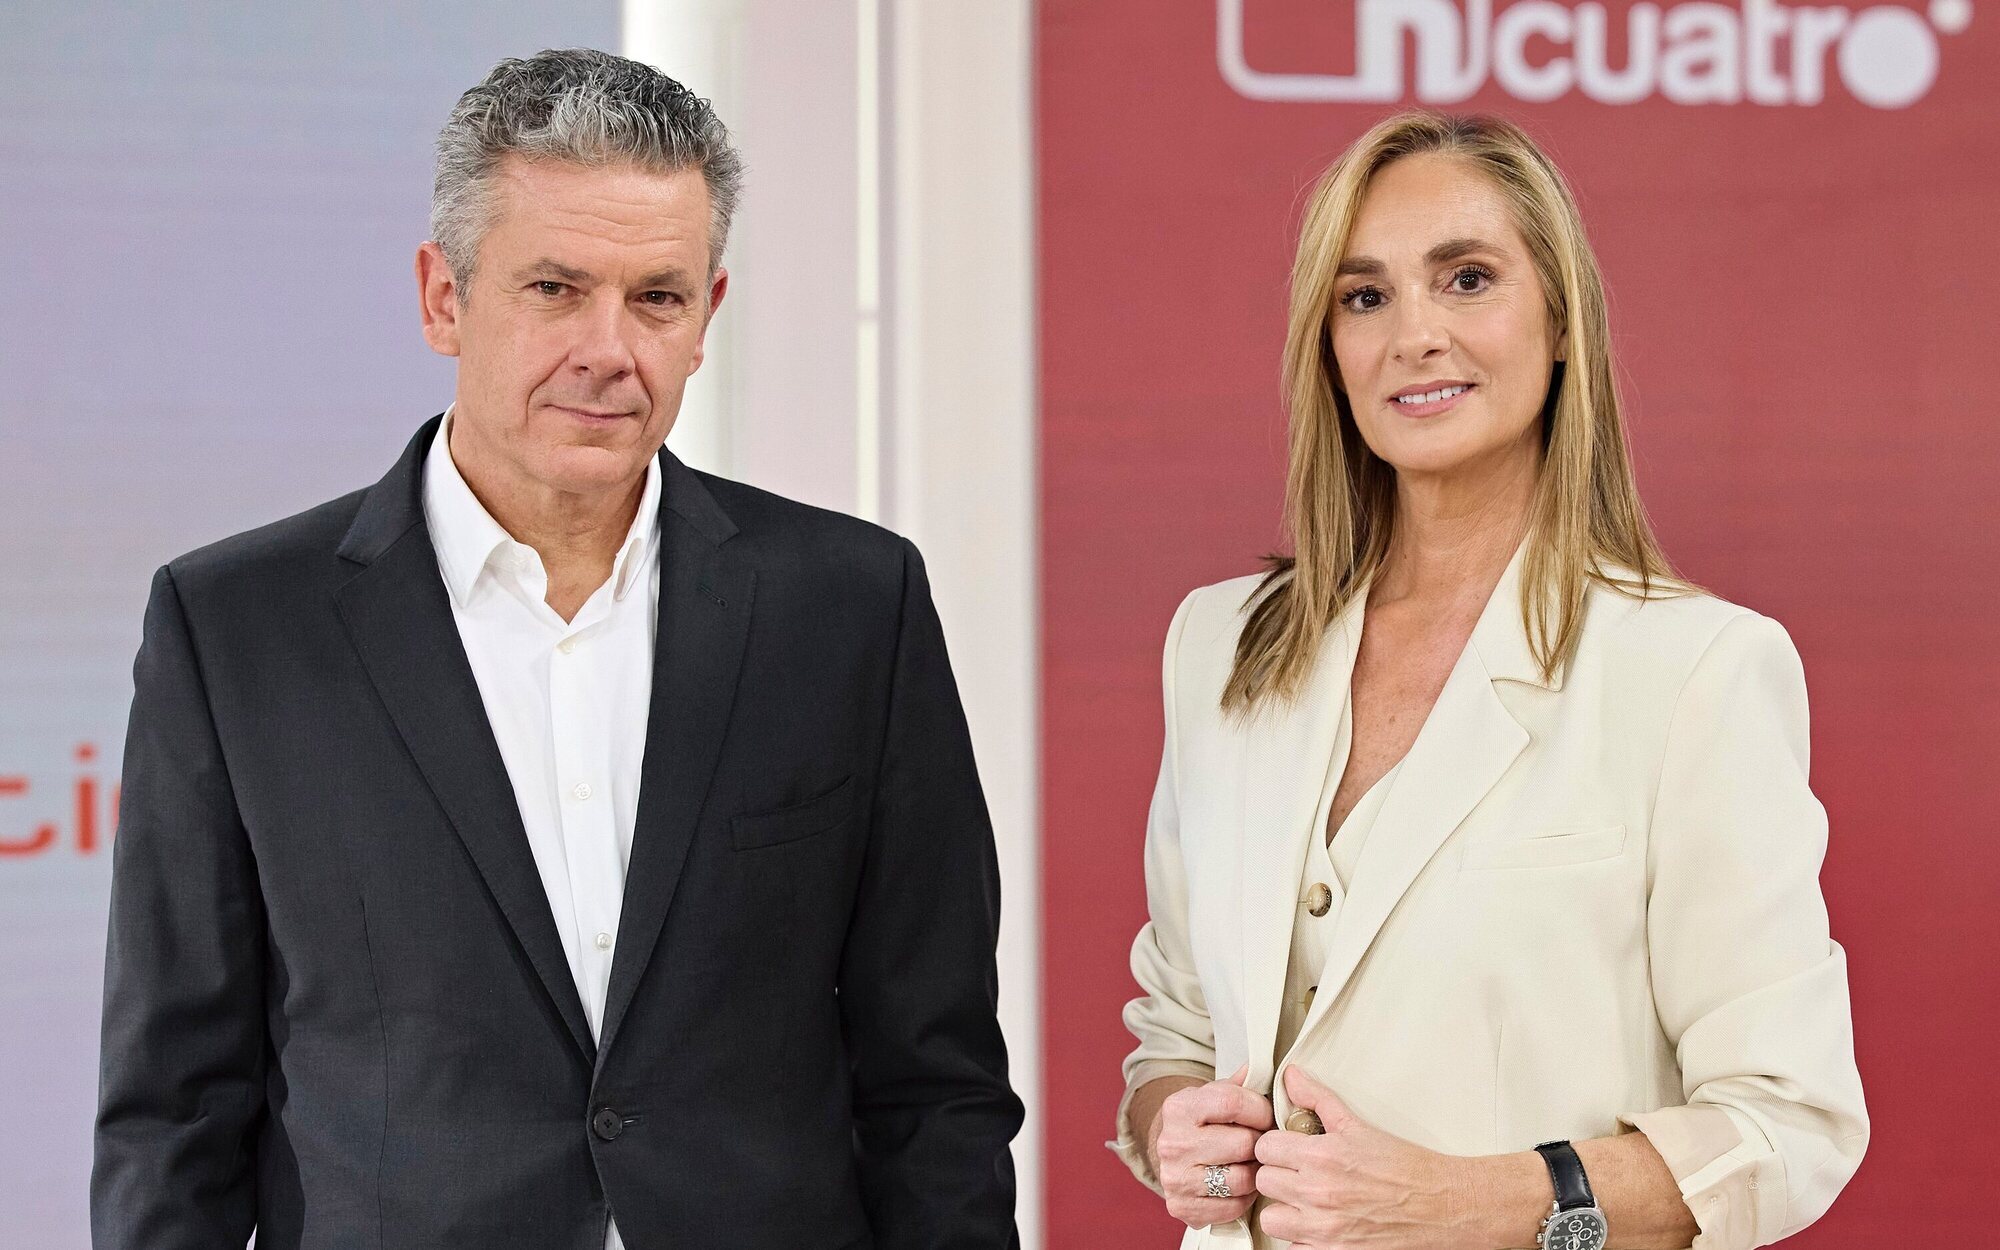 Roberto Arce y Marta Reyero ('Noticias Cuatro'): "Nuestra misión es informar con independencia y sin sesgos"